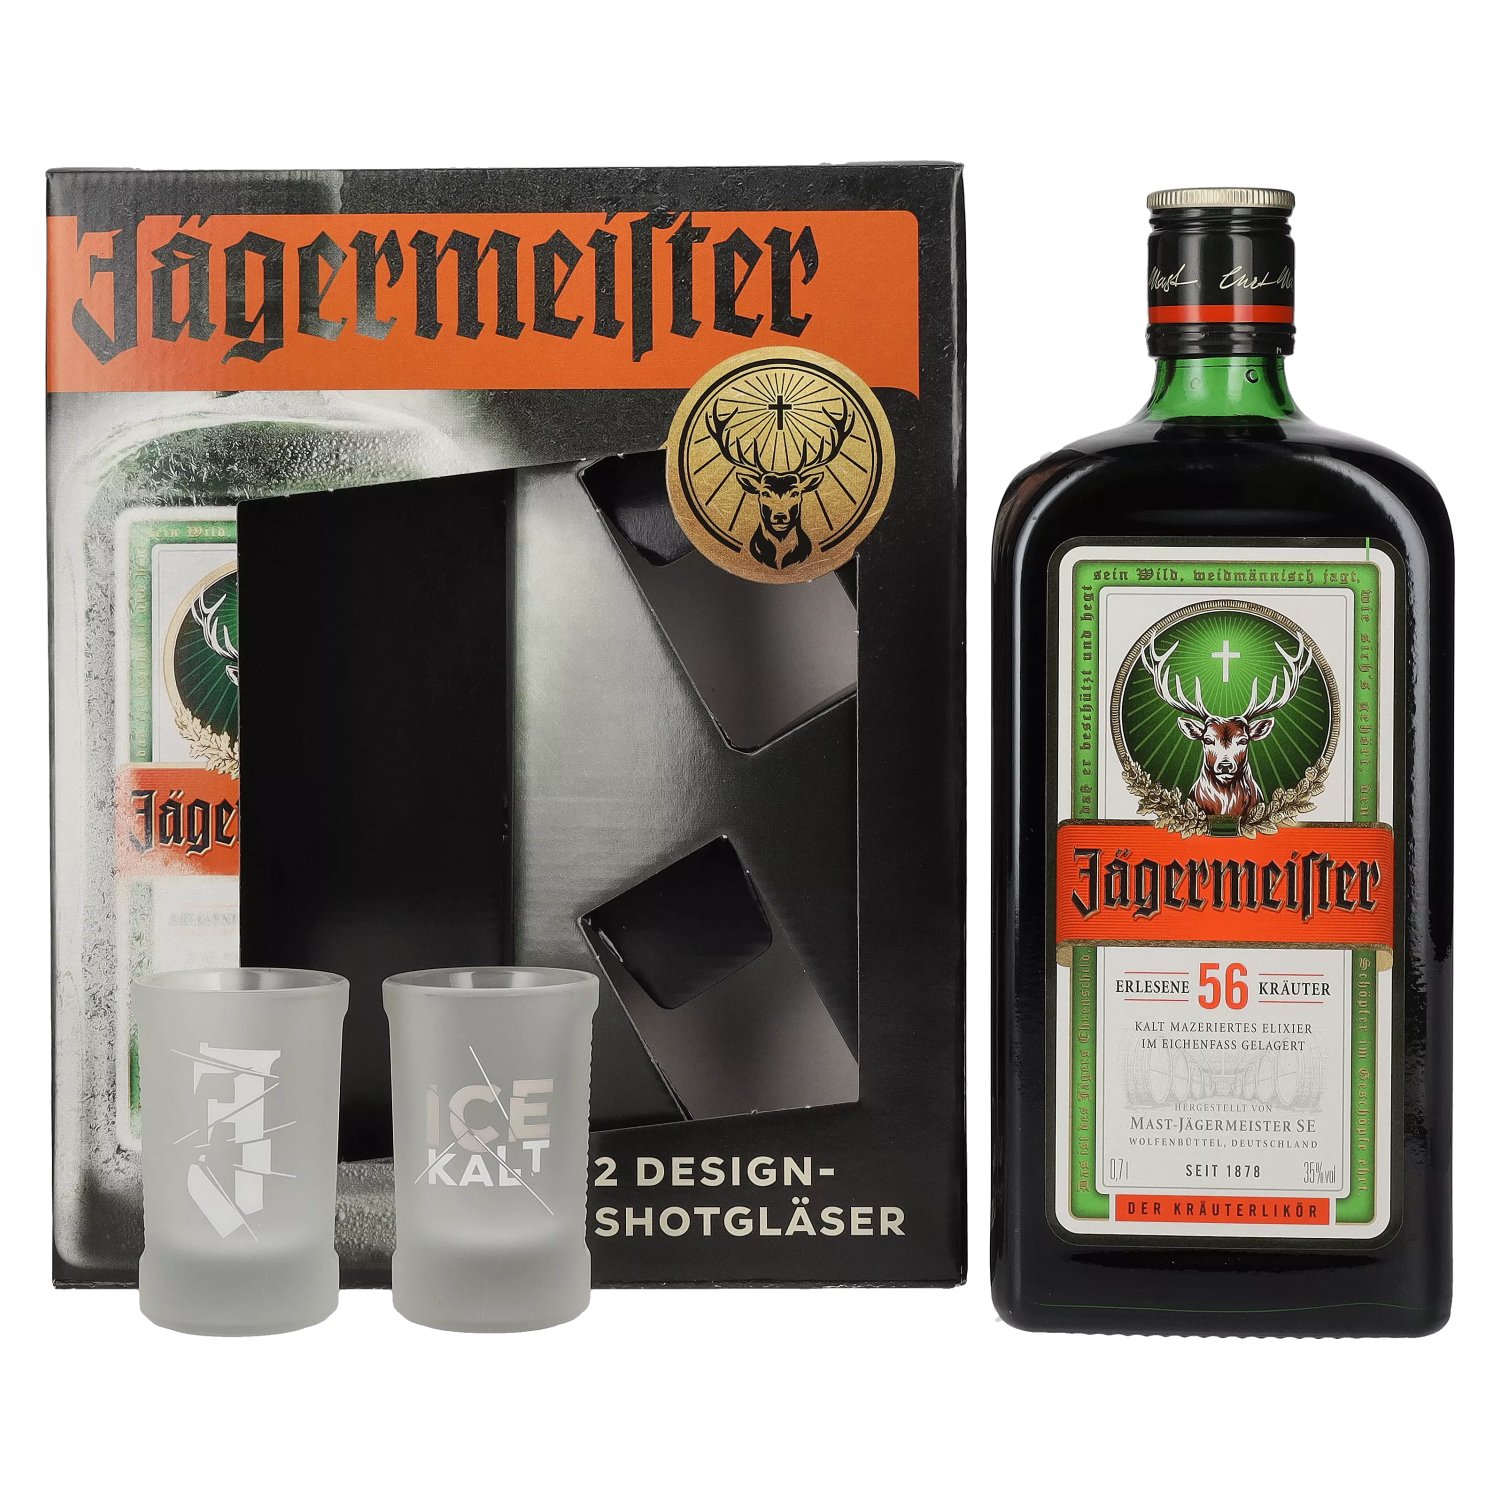 Jägermeister Kräuterlikör Schnaps Liquor Review 